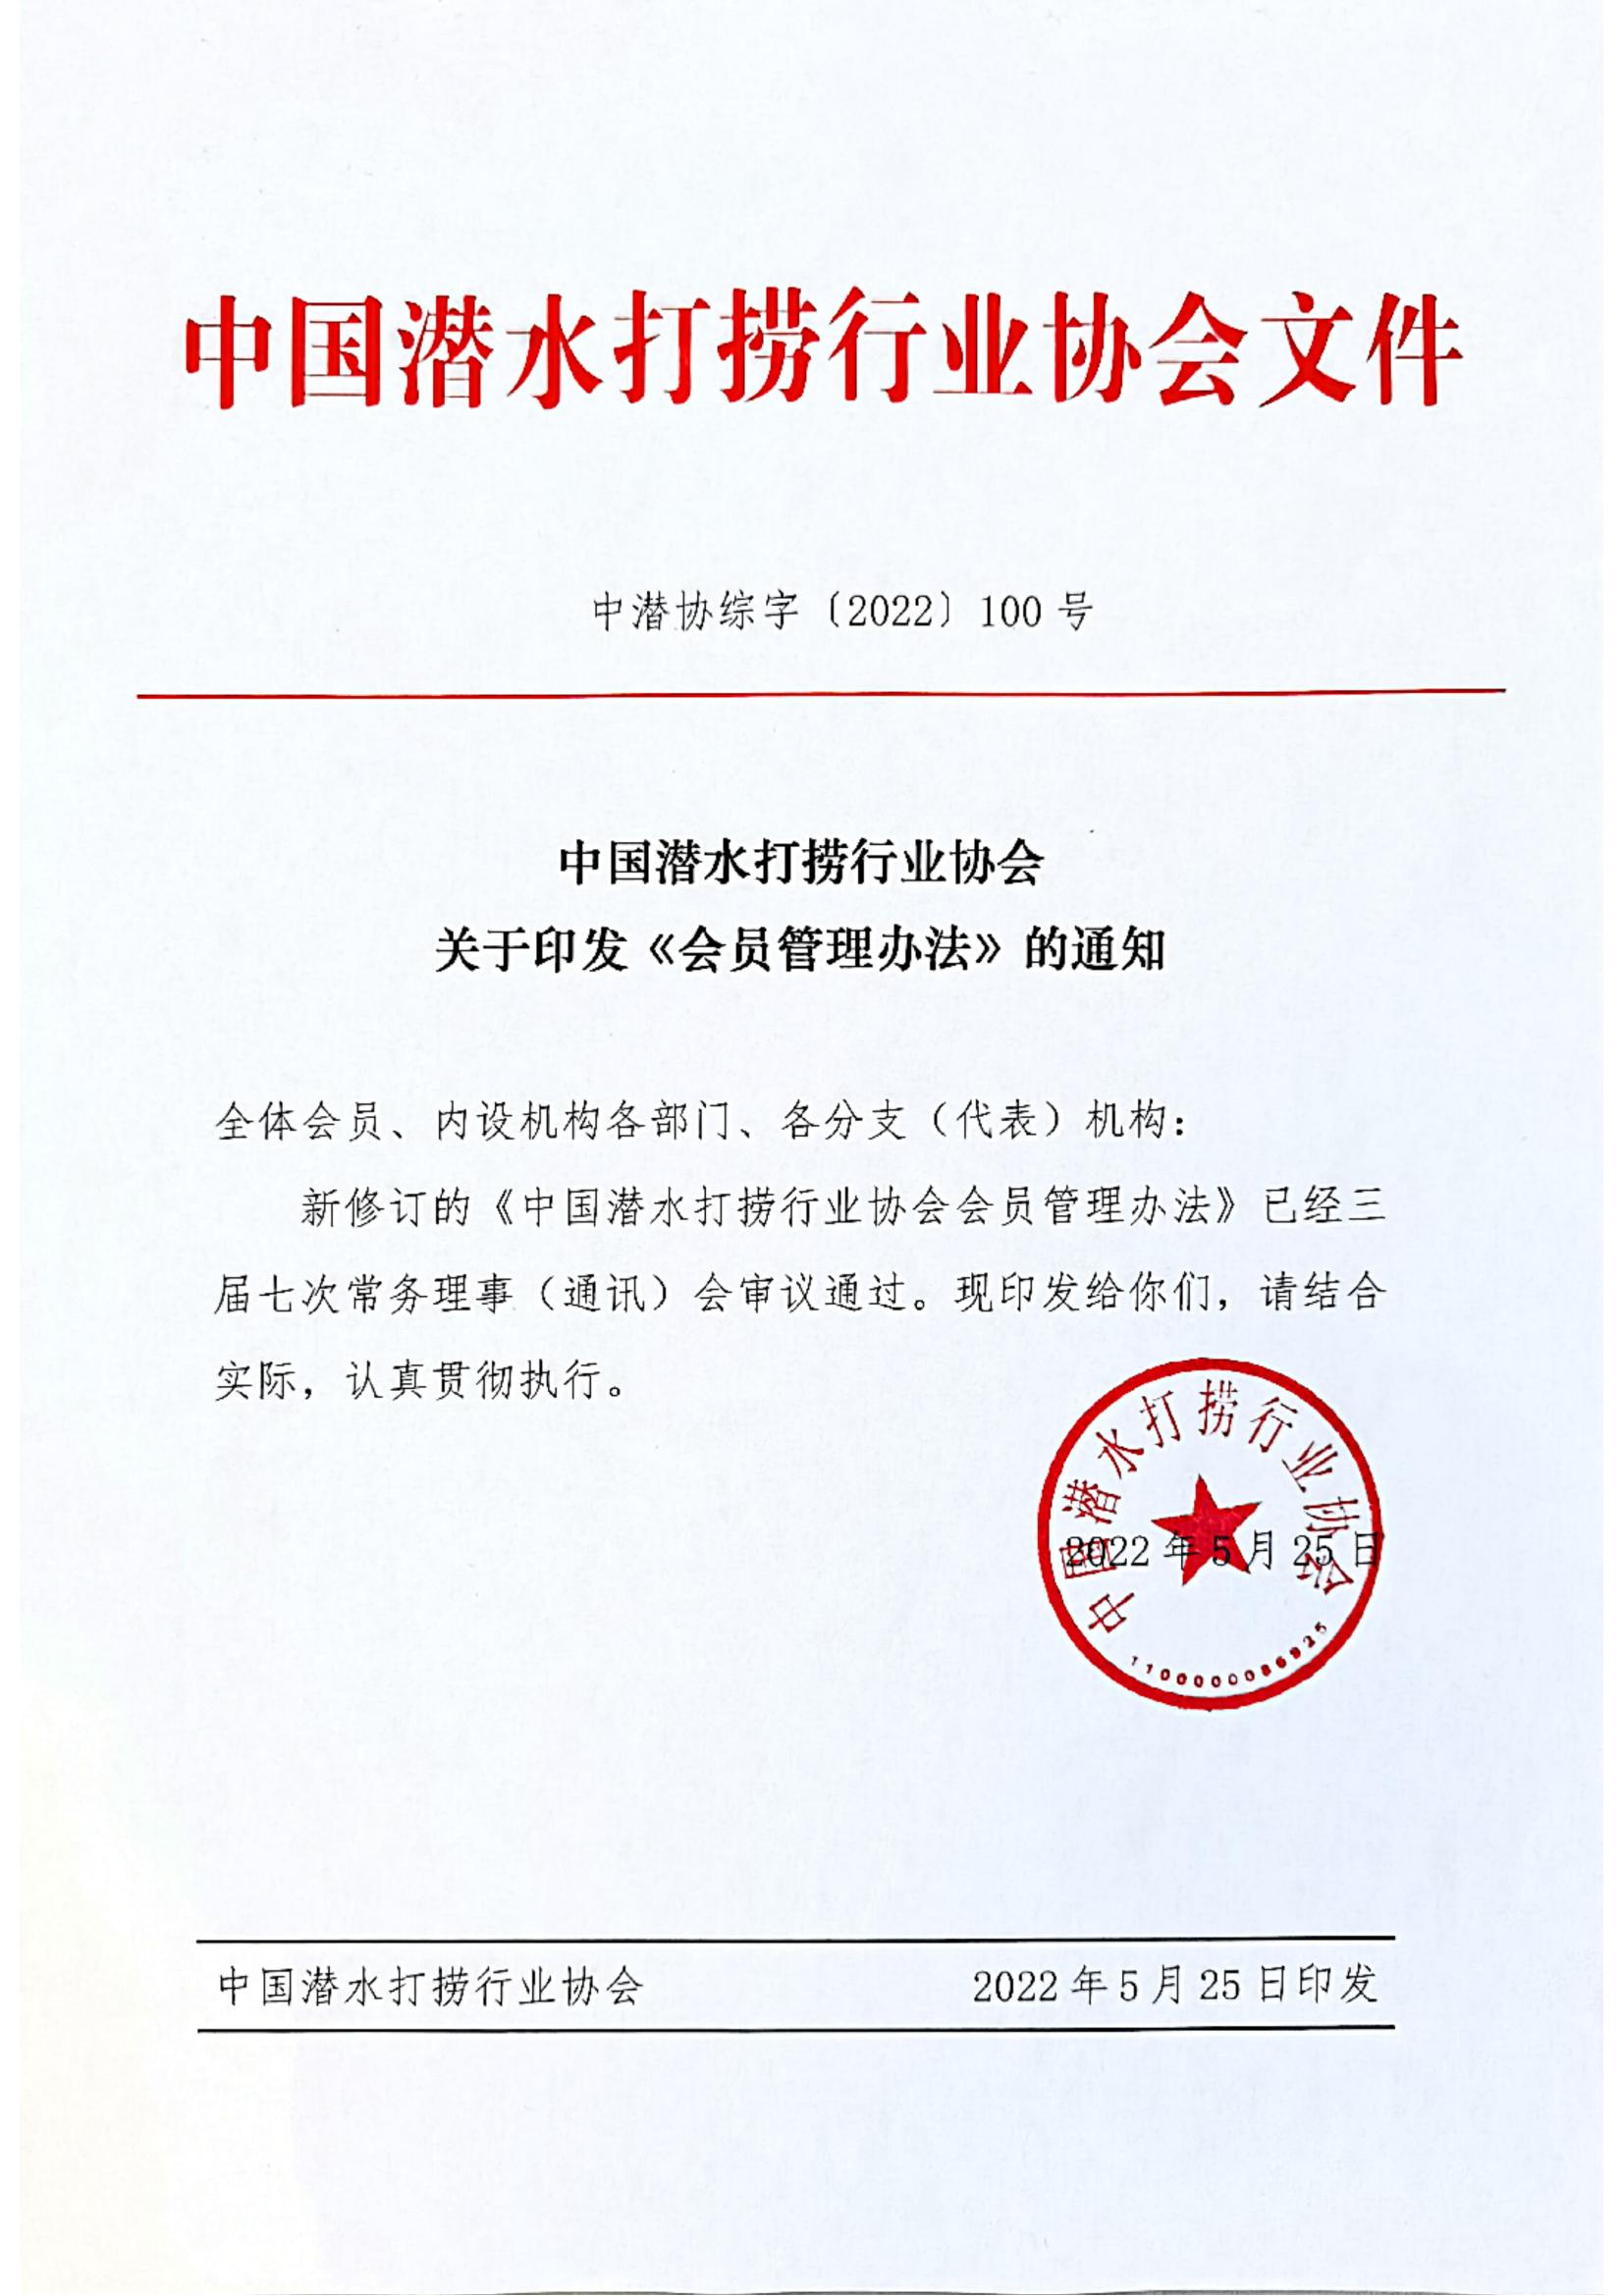 2022-100号发文 中国潜水打捞行业协会关于印发《会员管理办法》的通知_00.jpg